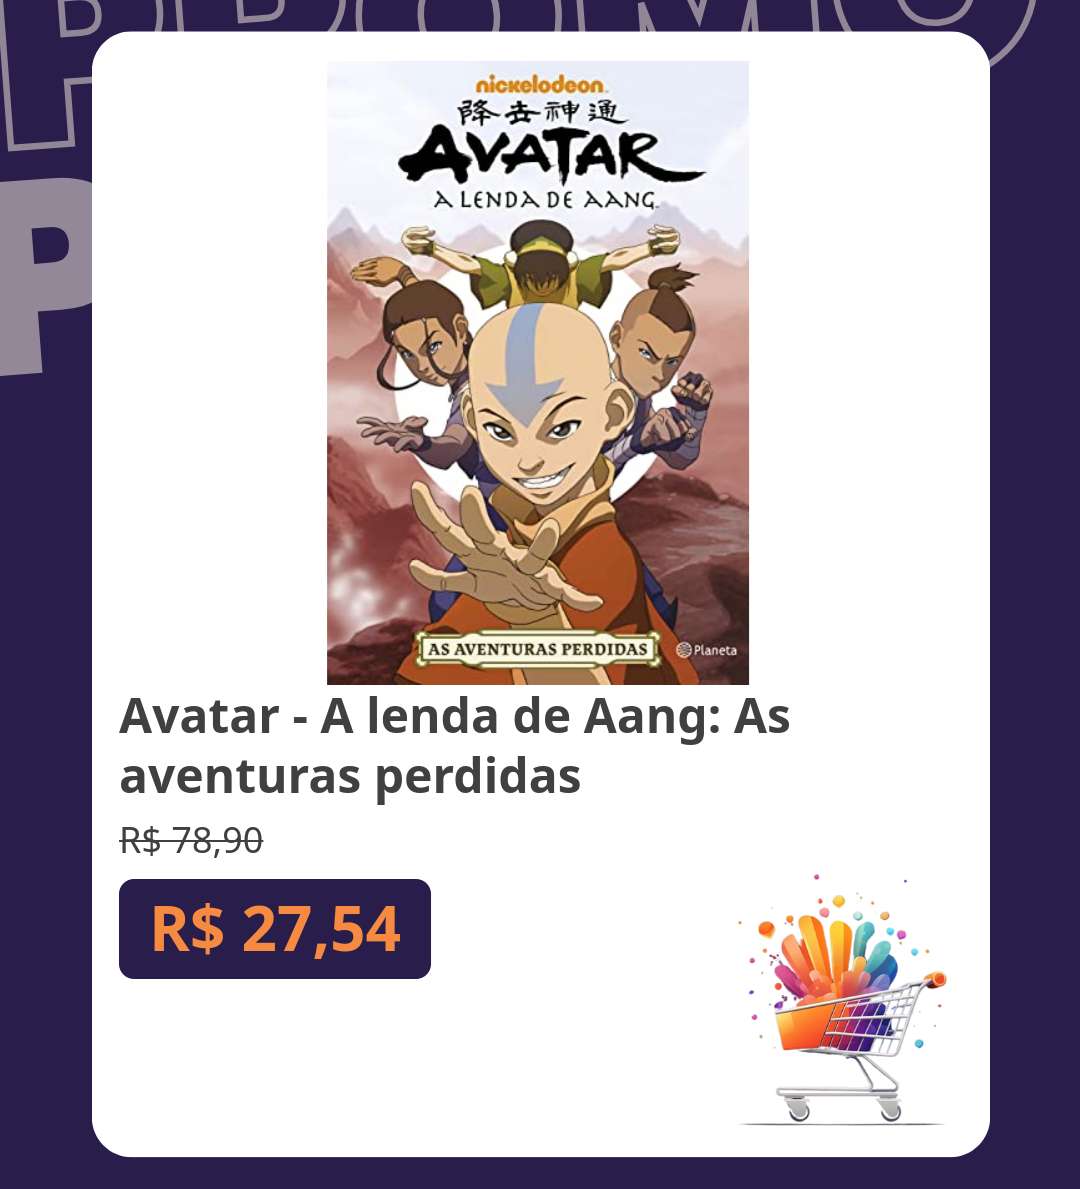 Avatar - A lenda de Aang: As aventuras perdidas
De R$ 78,90 por R$ 27,54

amzn.to/3V2odbA